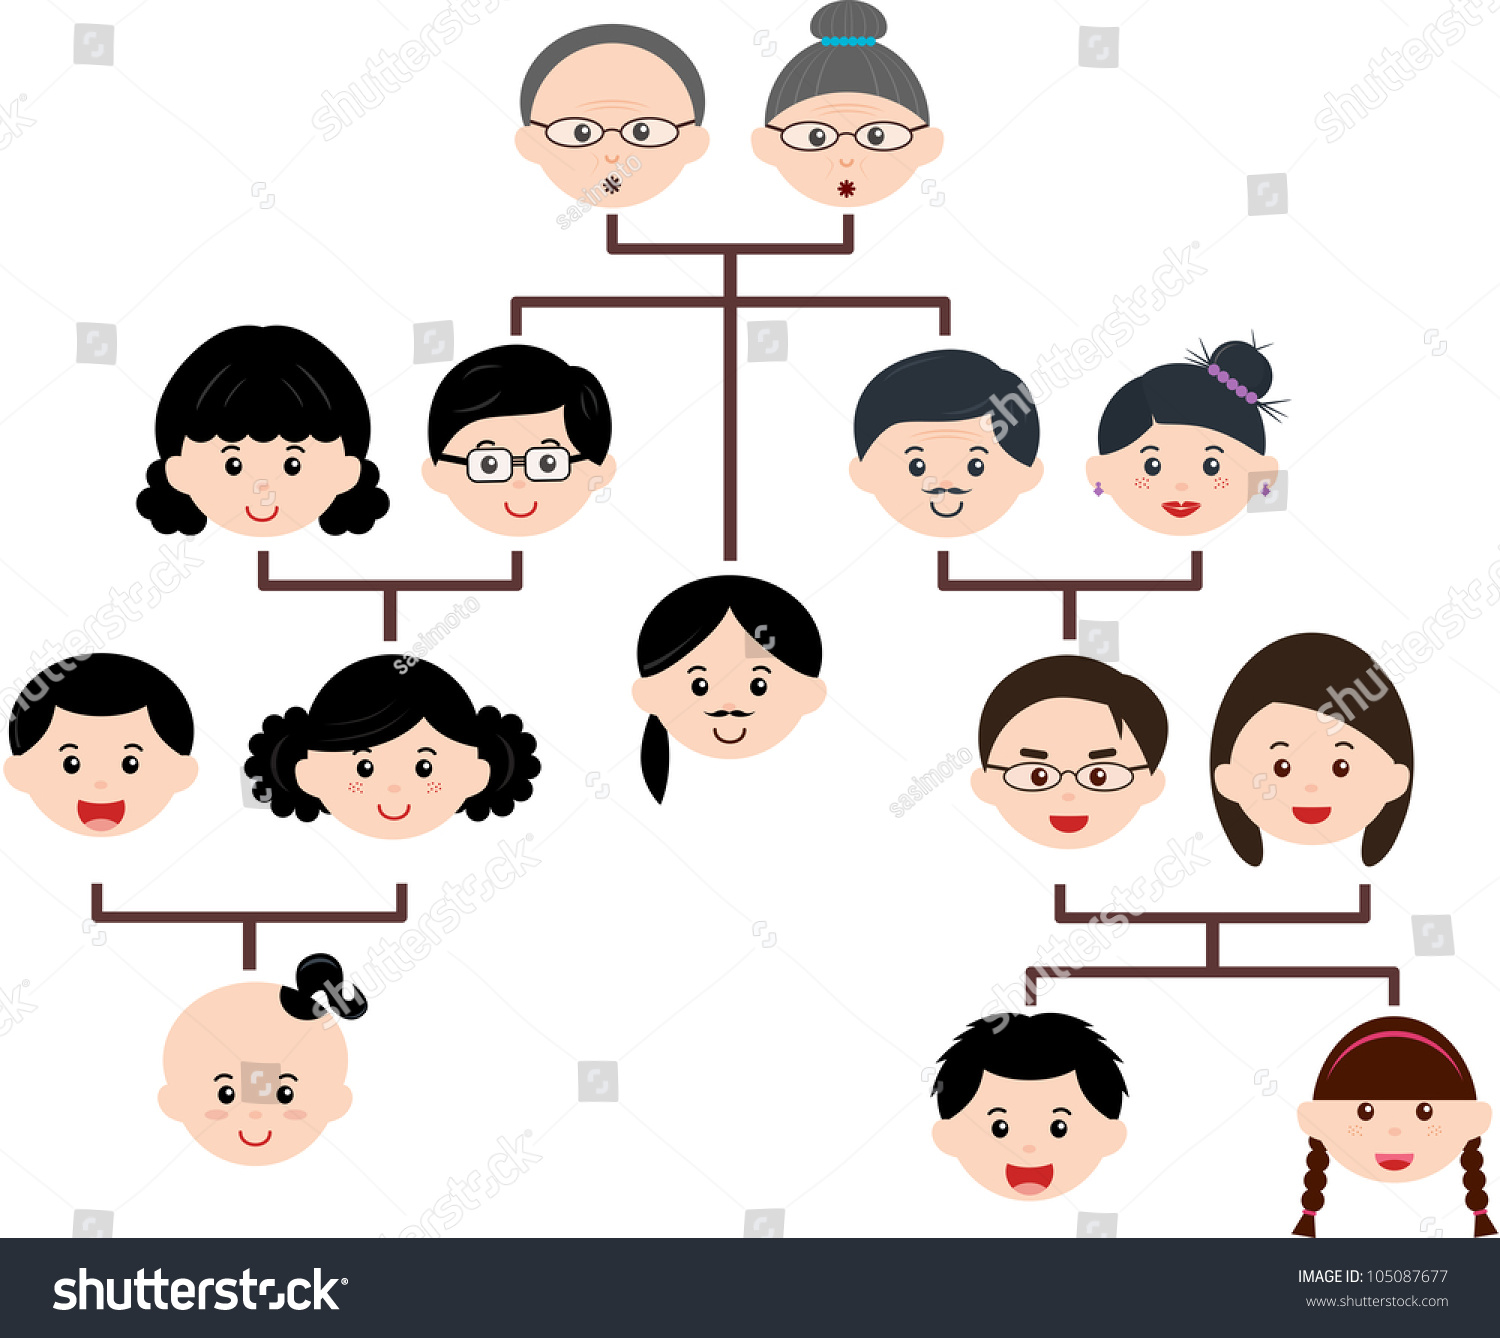 矢量图标:家庭树,系谱树图,孤立在白色背景-人